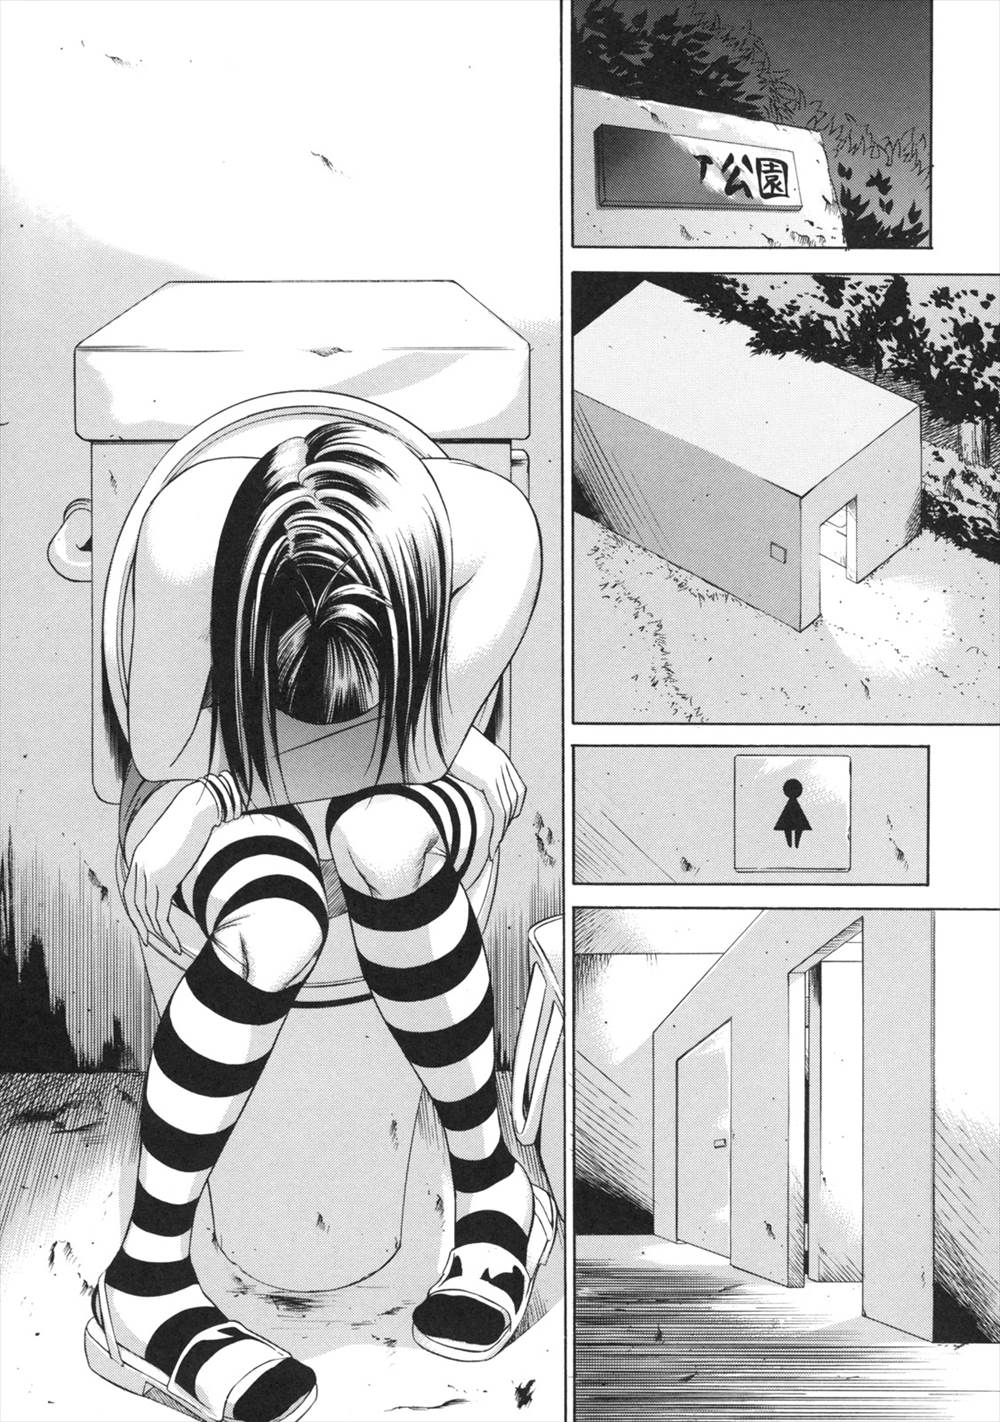 【エロ漫画】家に居場所がないJKが援交を疑われ家でした先のトイレでオナニーしたら浮浪者に見つかりレイプされる…